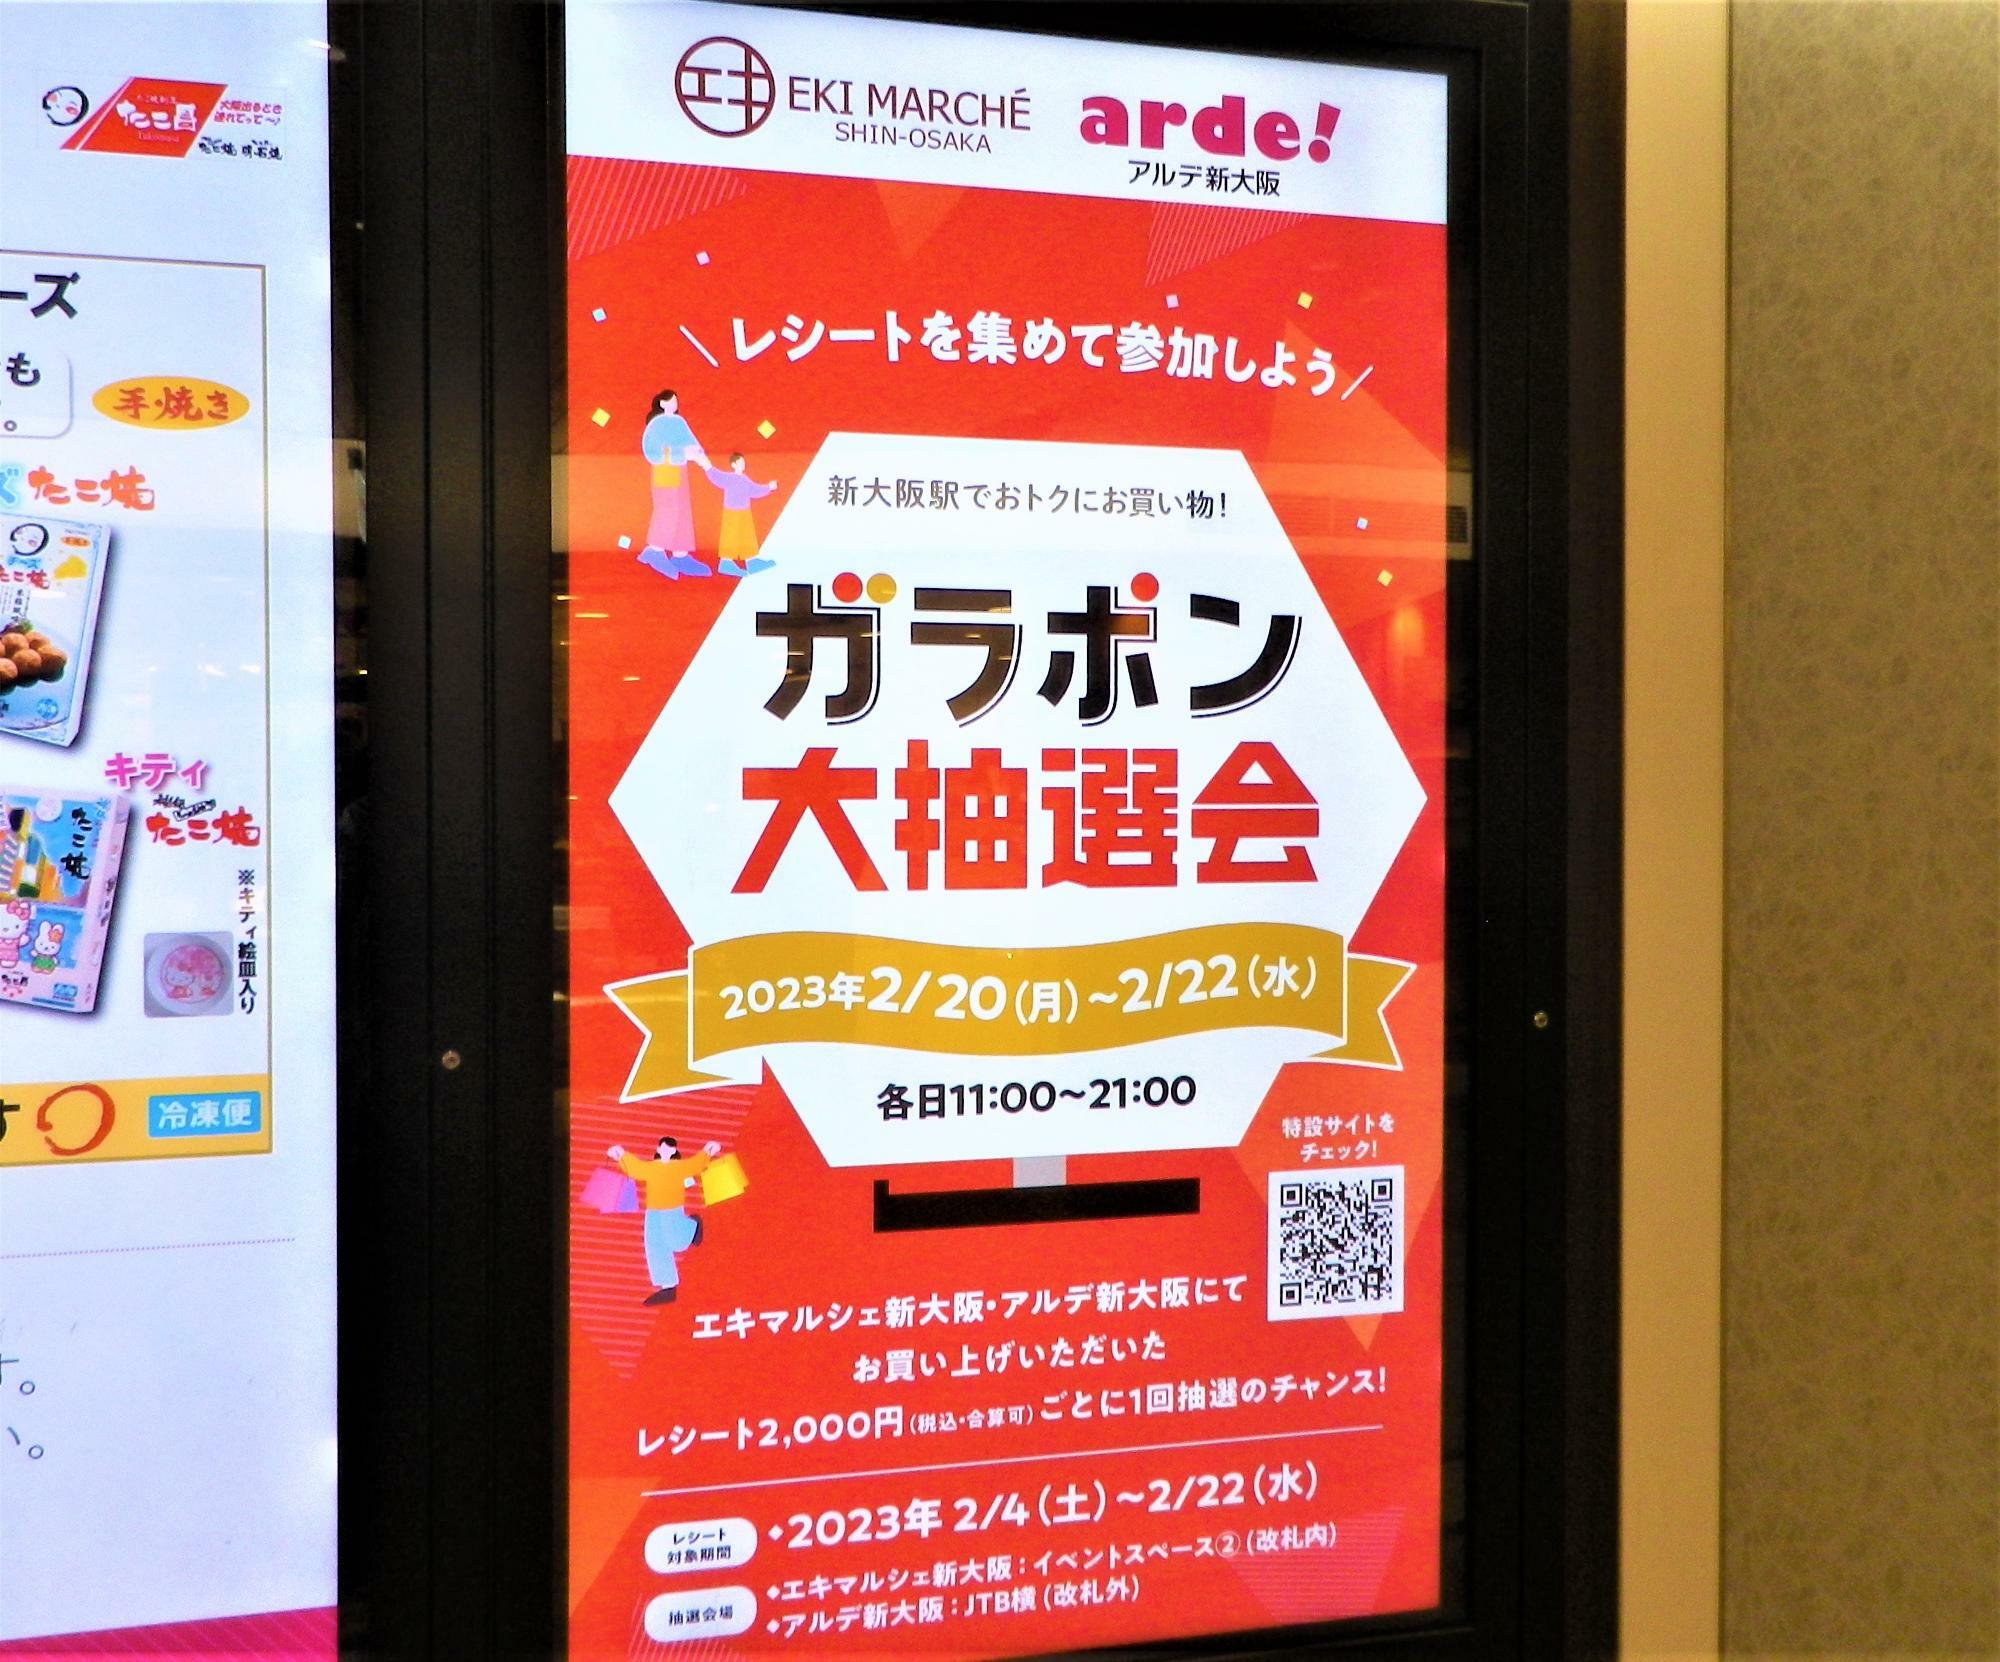 エキマルシェ新大阪・アルデ新大阪両施設の全店舗が対象。